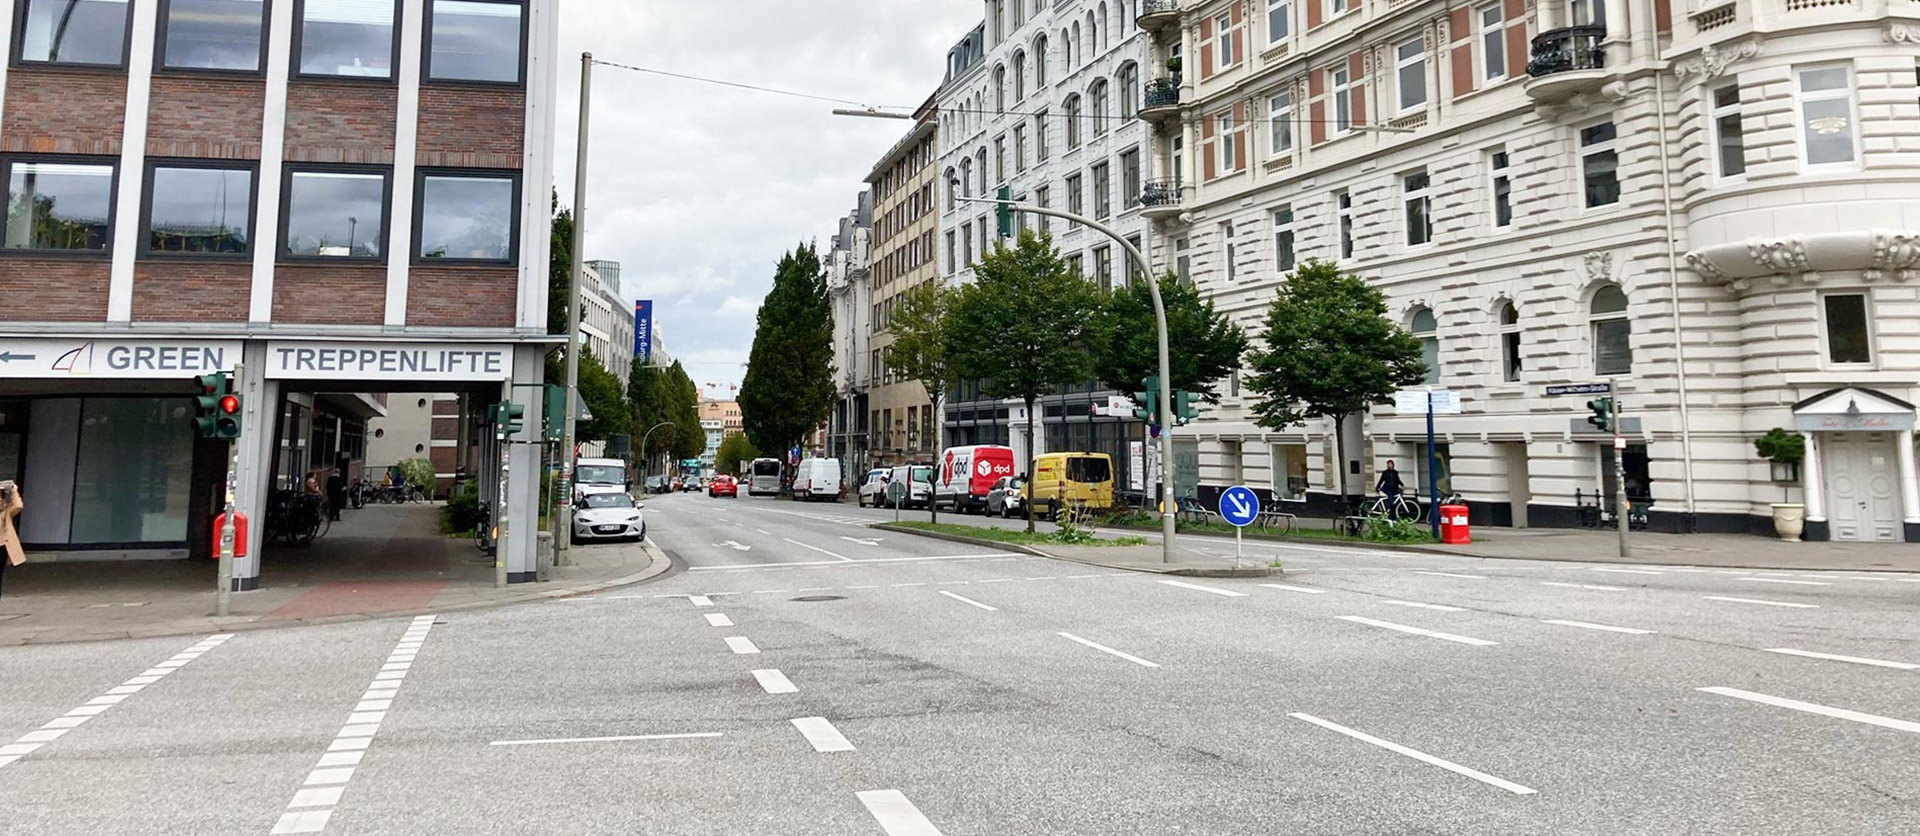 Kaiser-Wilhelm-Straße auf Höhe des Johannes-Brahms-Platzes mit Blickrichtung Süden.